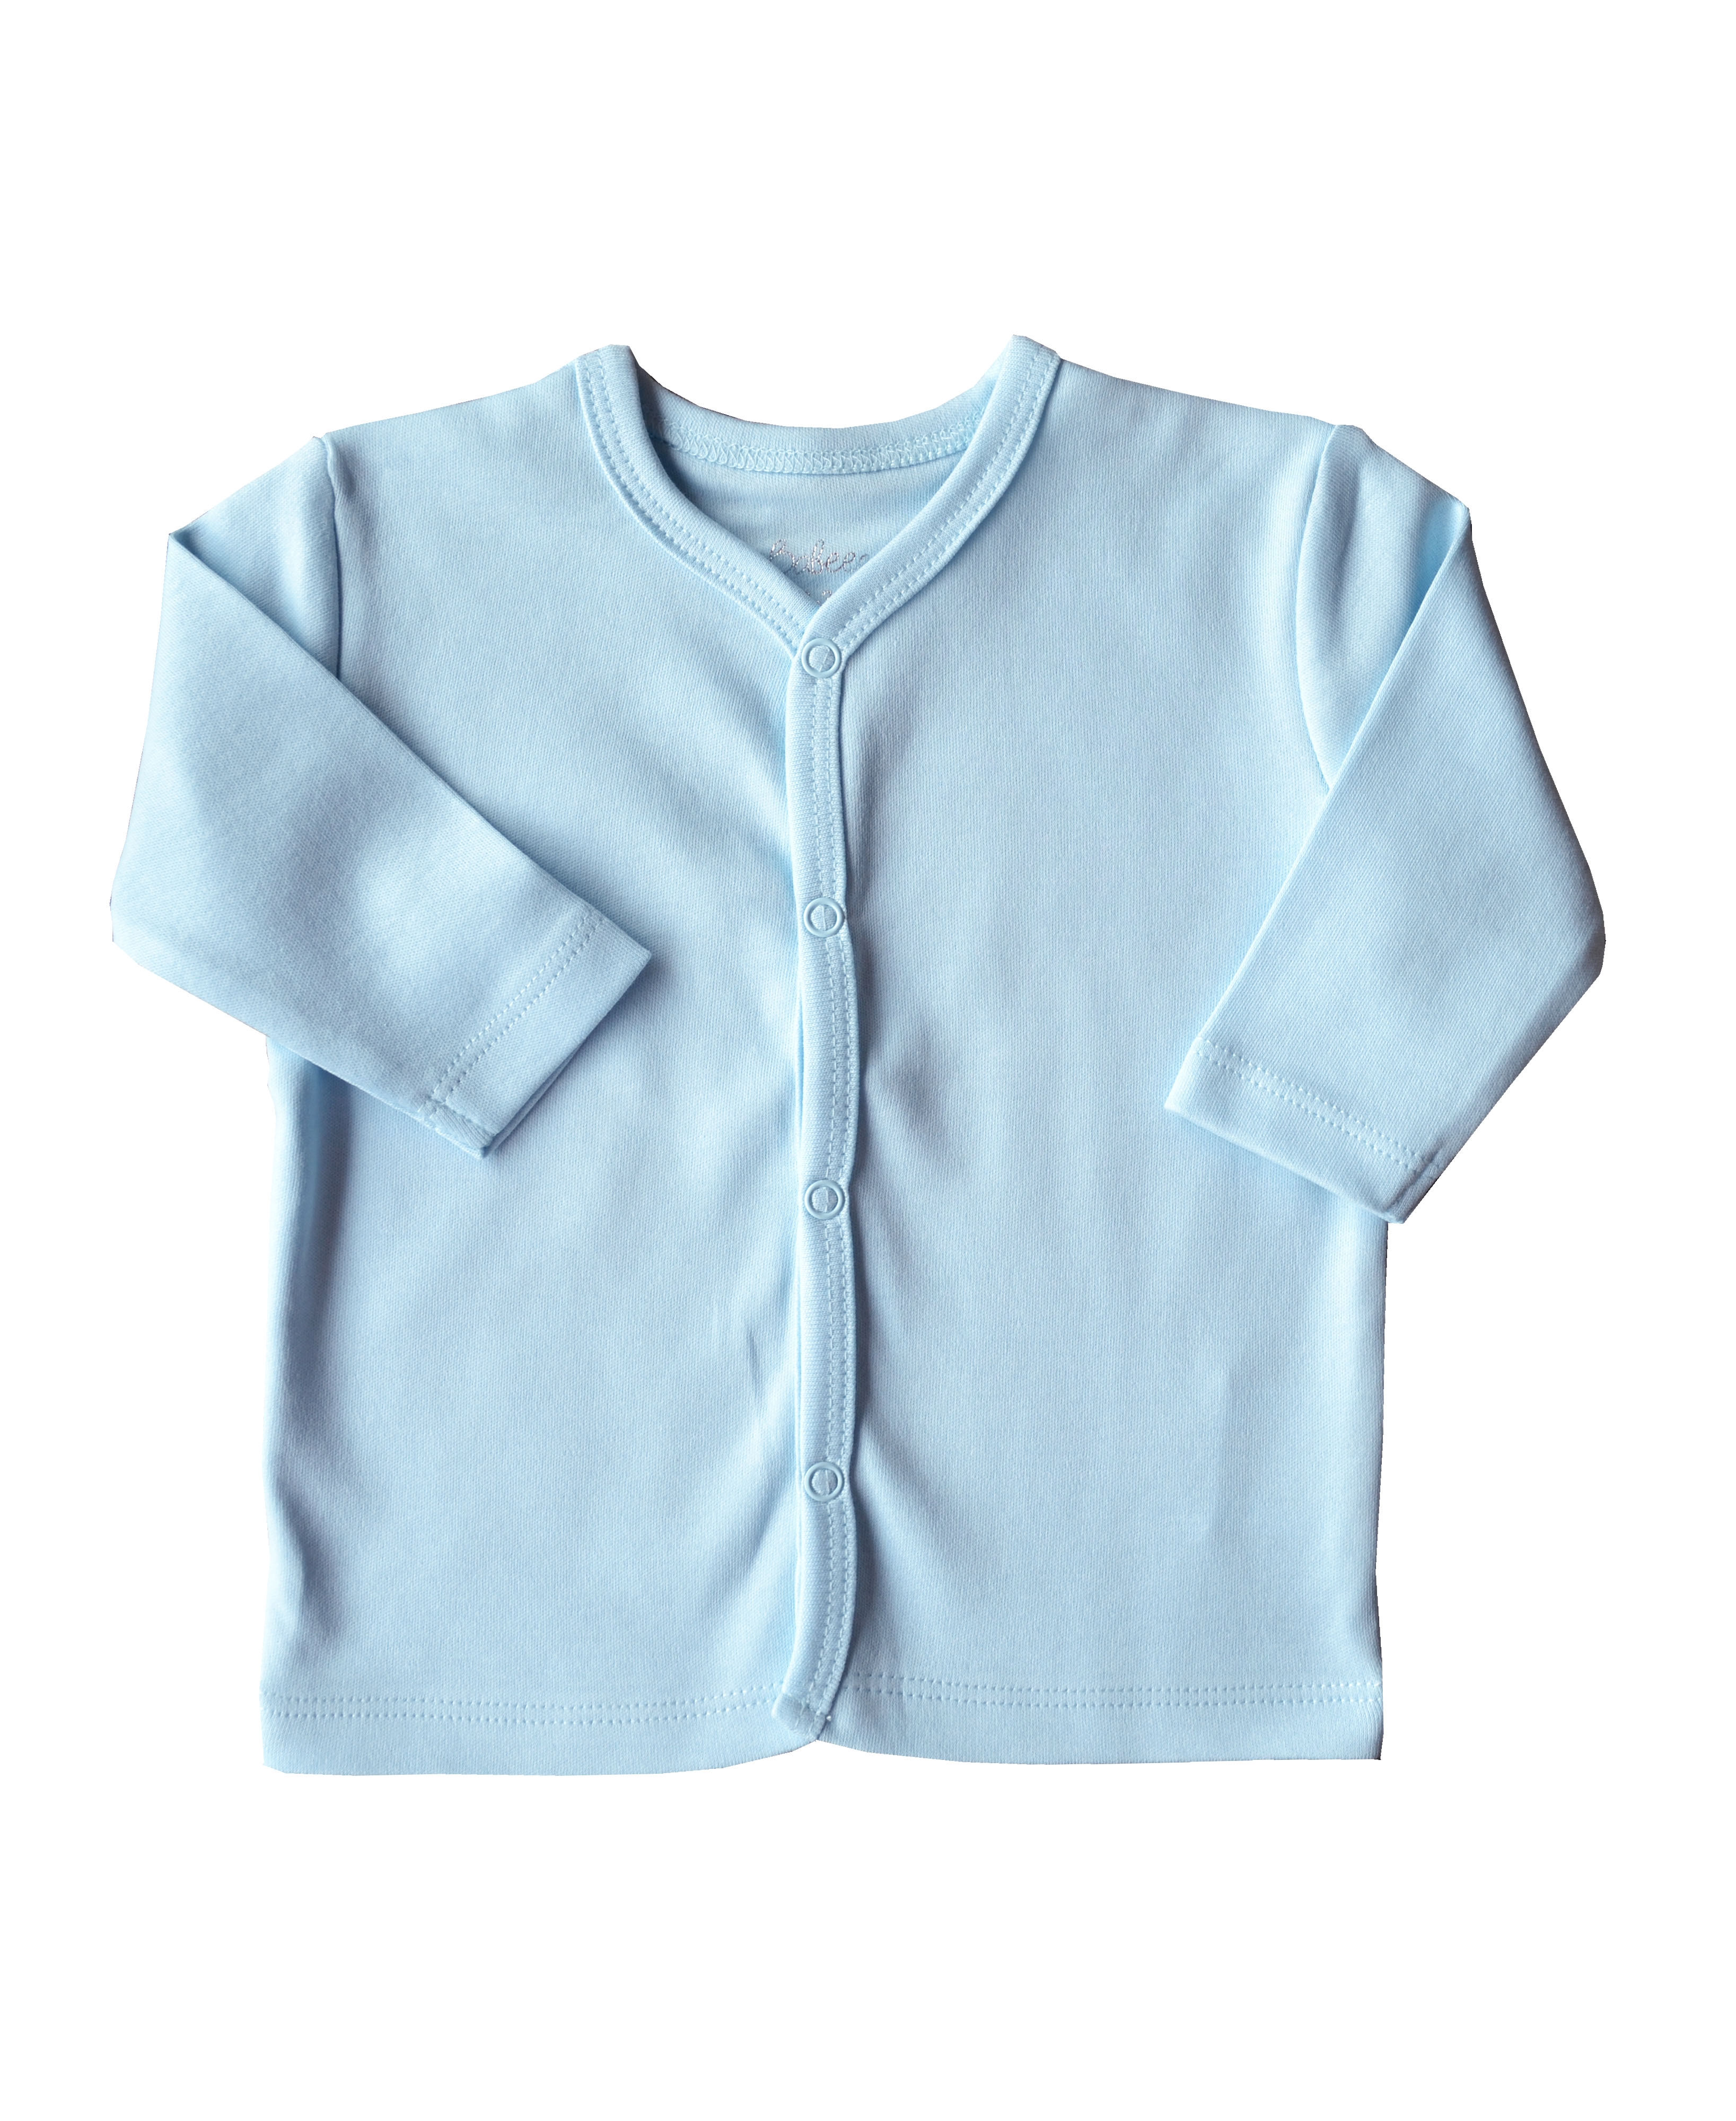 Babeez | Blue Long Sleeve Jhabla (100% Cotton Interlock Biowash) undefined